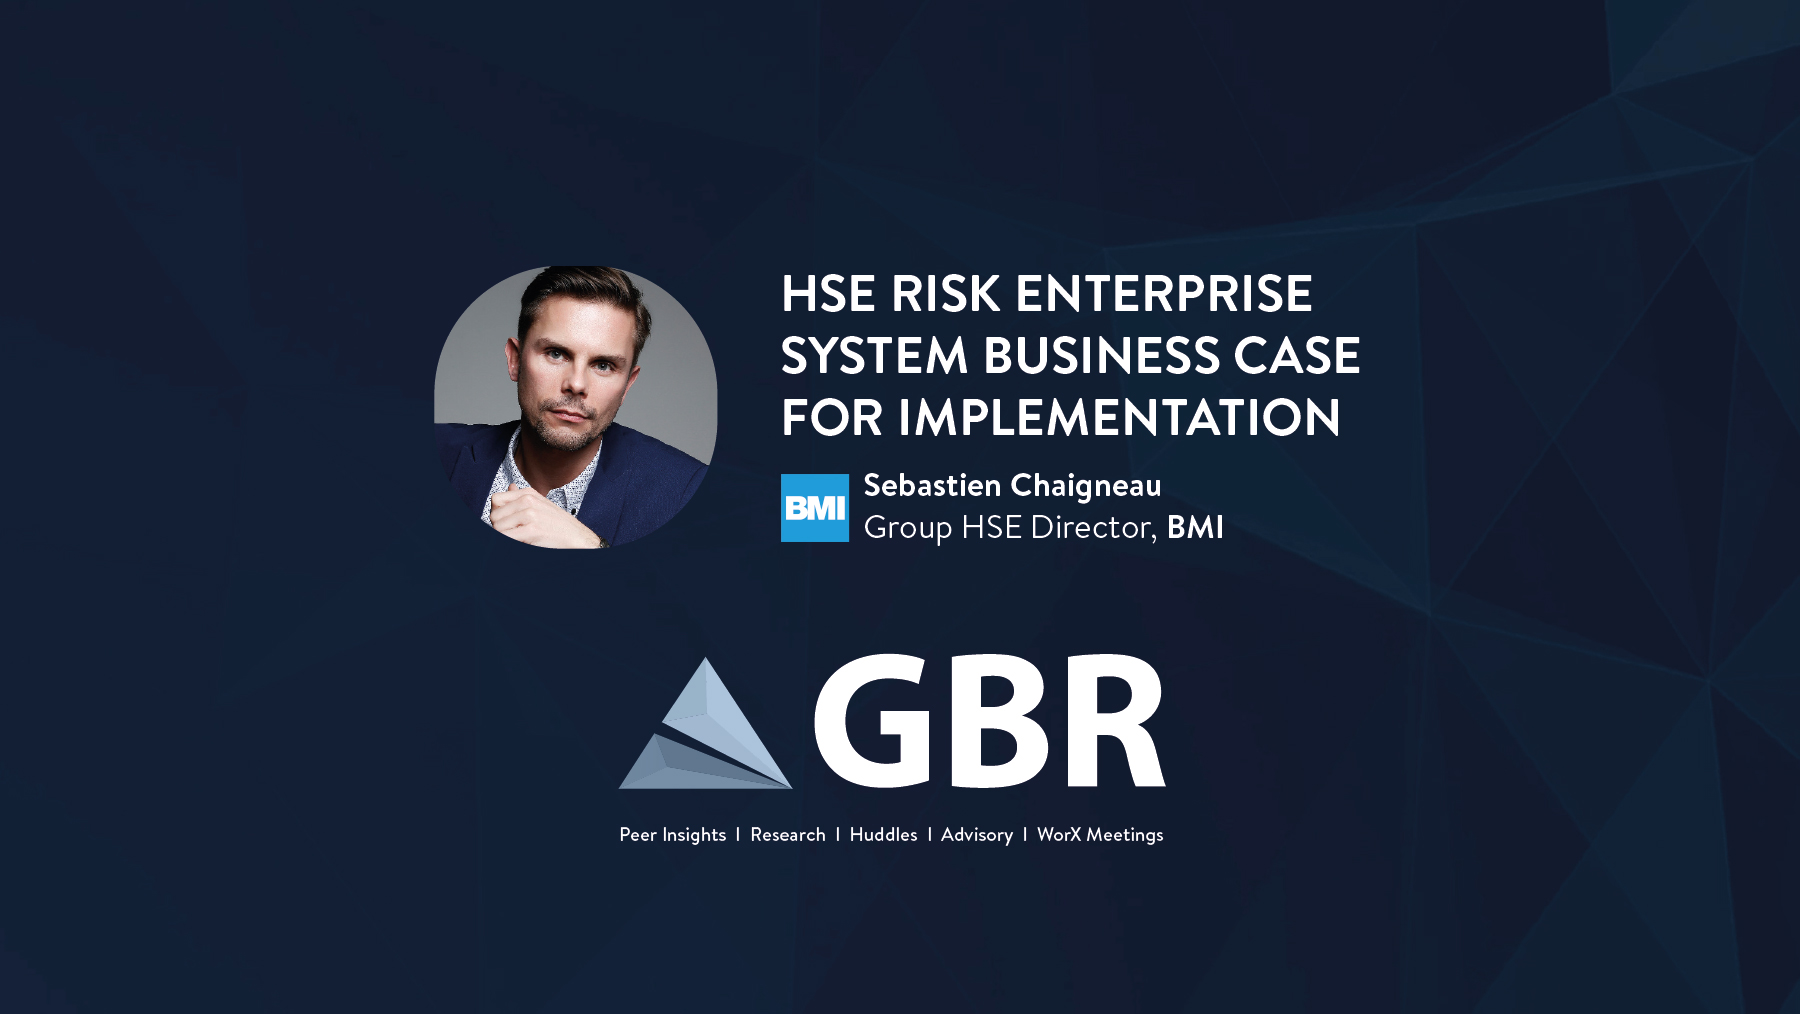 HSE Risk Enterprise System Business Case for Implementation